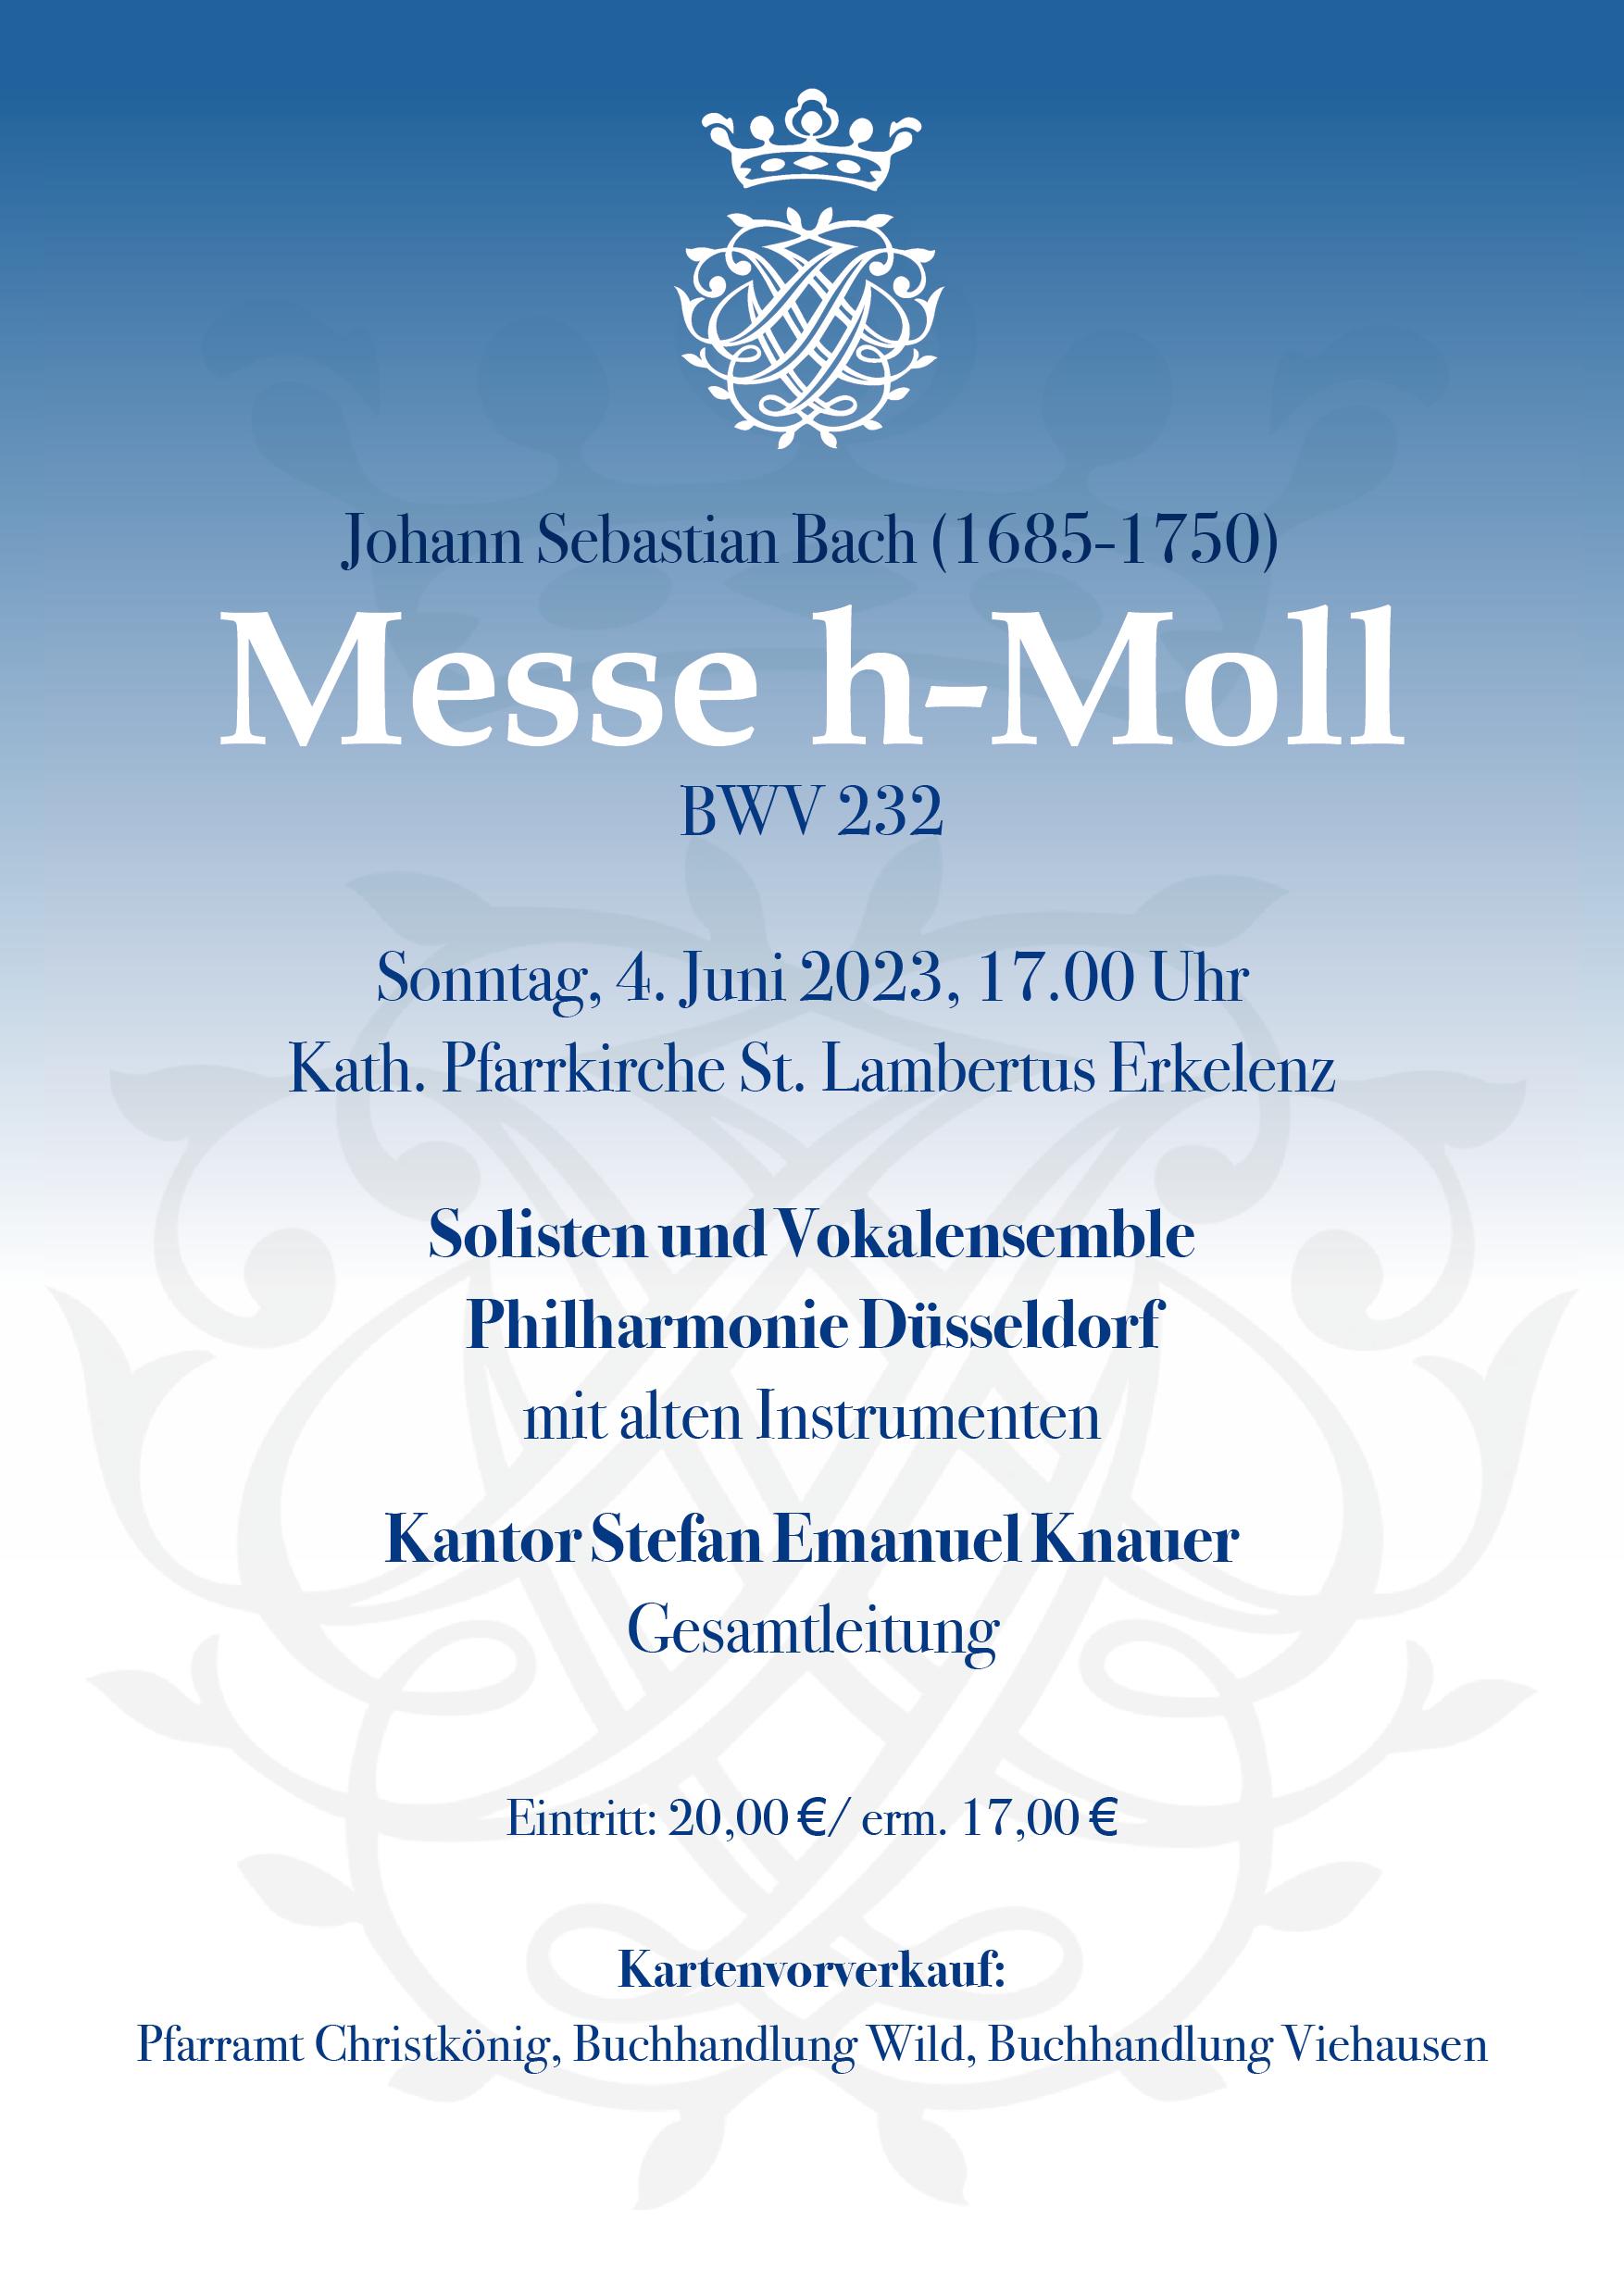 Konzertplakat Messe J.S. Bach 2023 (c) Christkönig Erkelenz 2023 (SK, Plakat h-Moll Messe J.S.Bach 25.4.23)